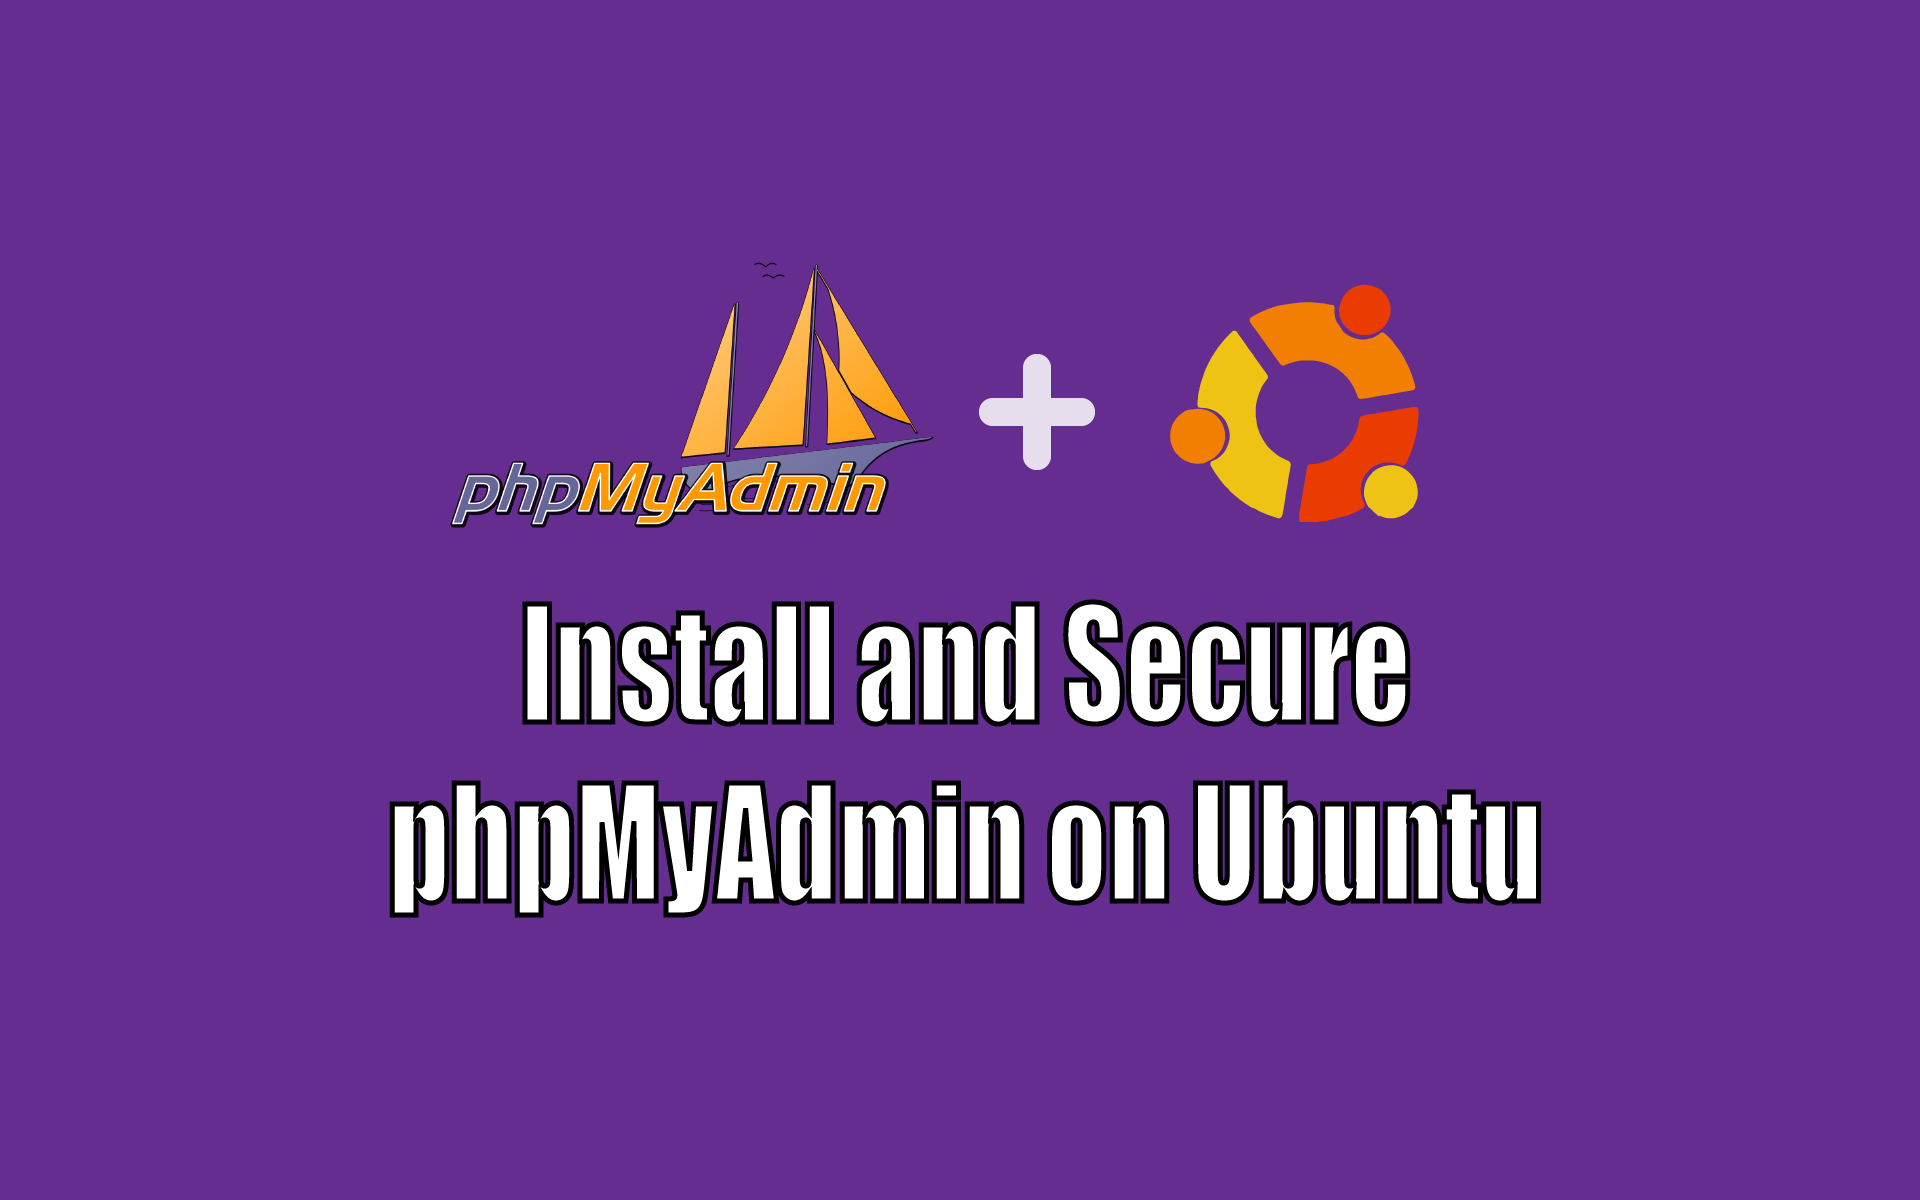 phpmyadmin ubuntu path